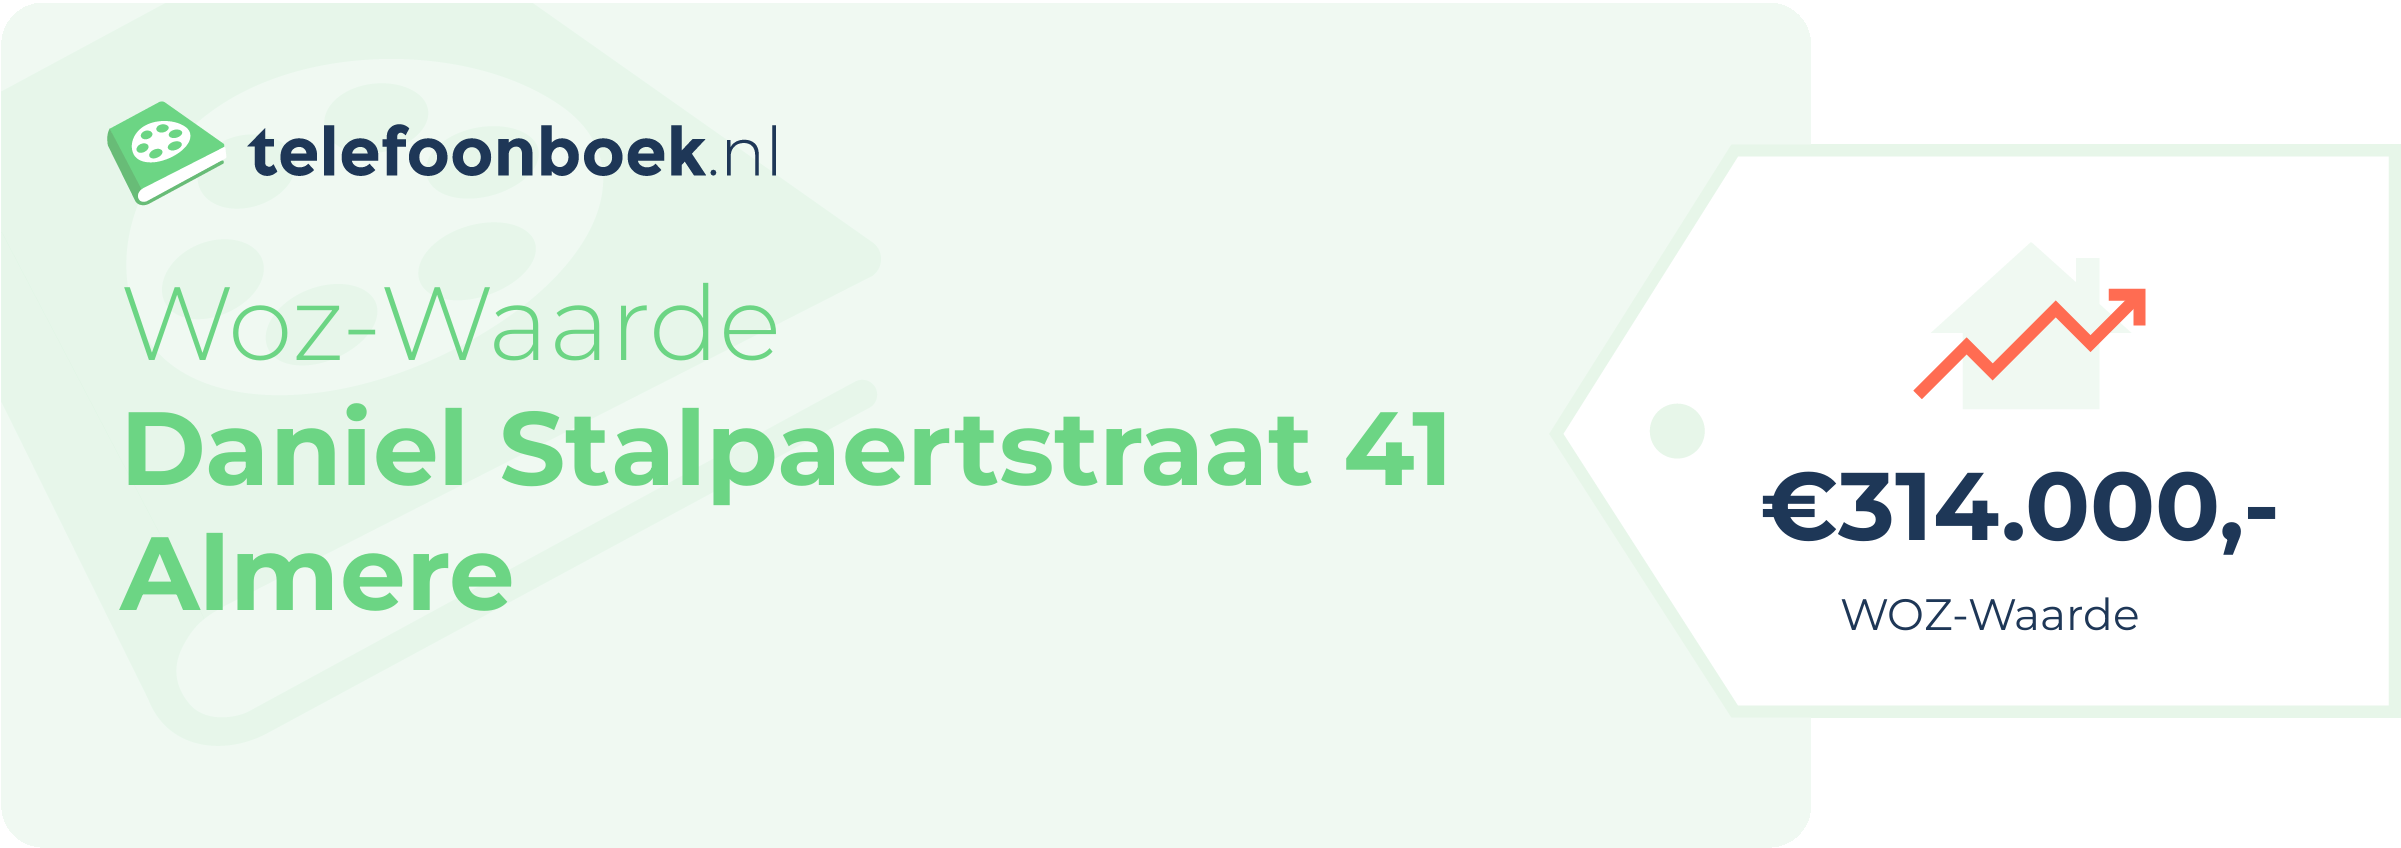 WOZ-waarde Daniel Stalpaertstraat 41 Almere